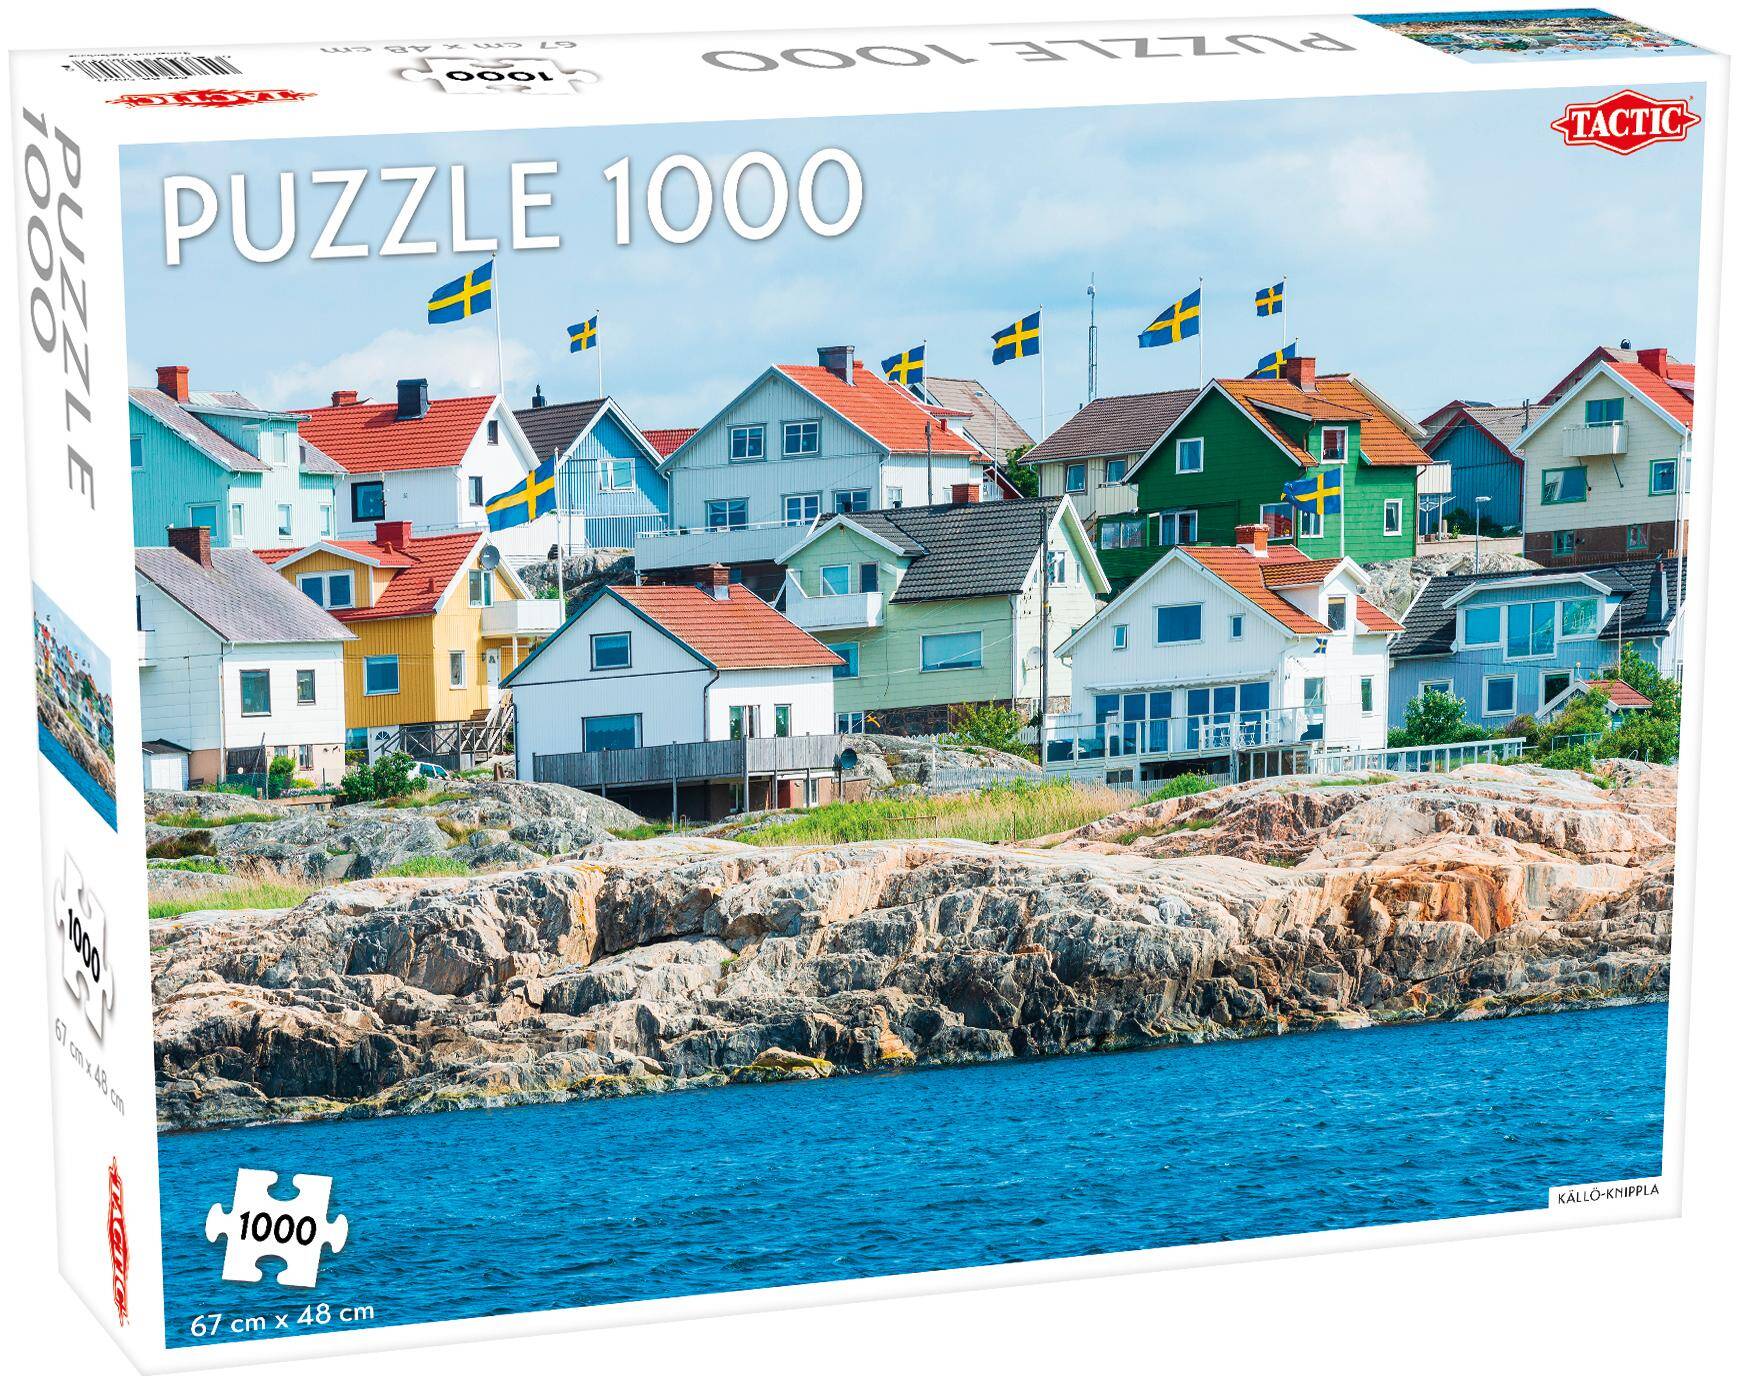 Puzzle 1000 Källö-Knippla